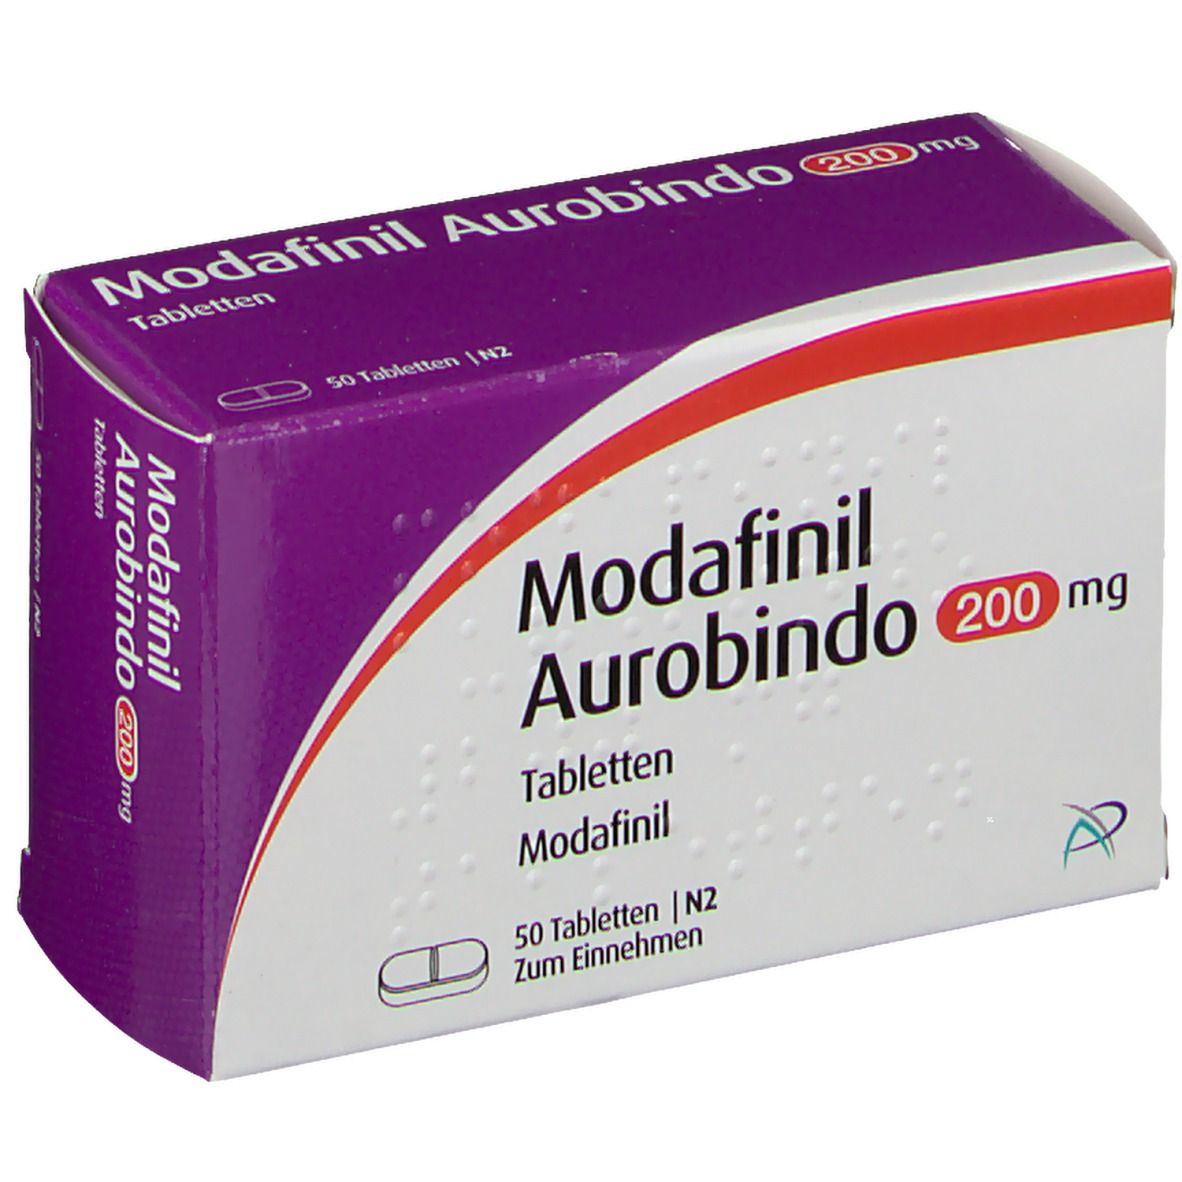 Modafinil Aurobindo 200 mg